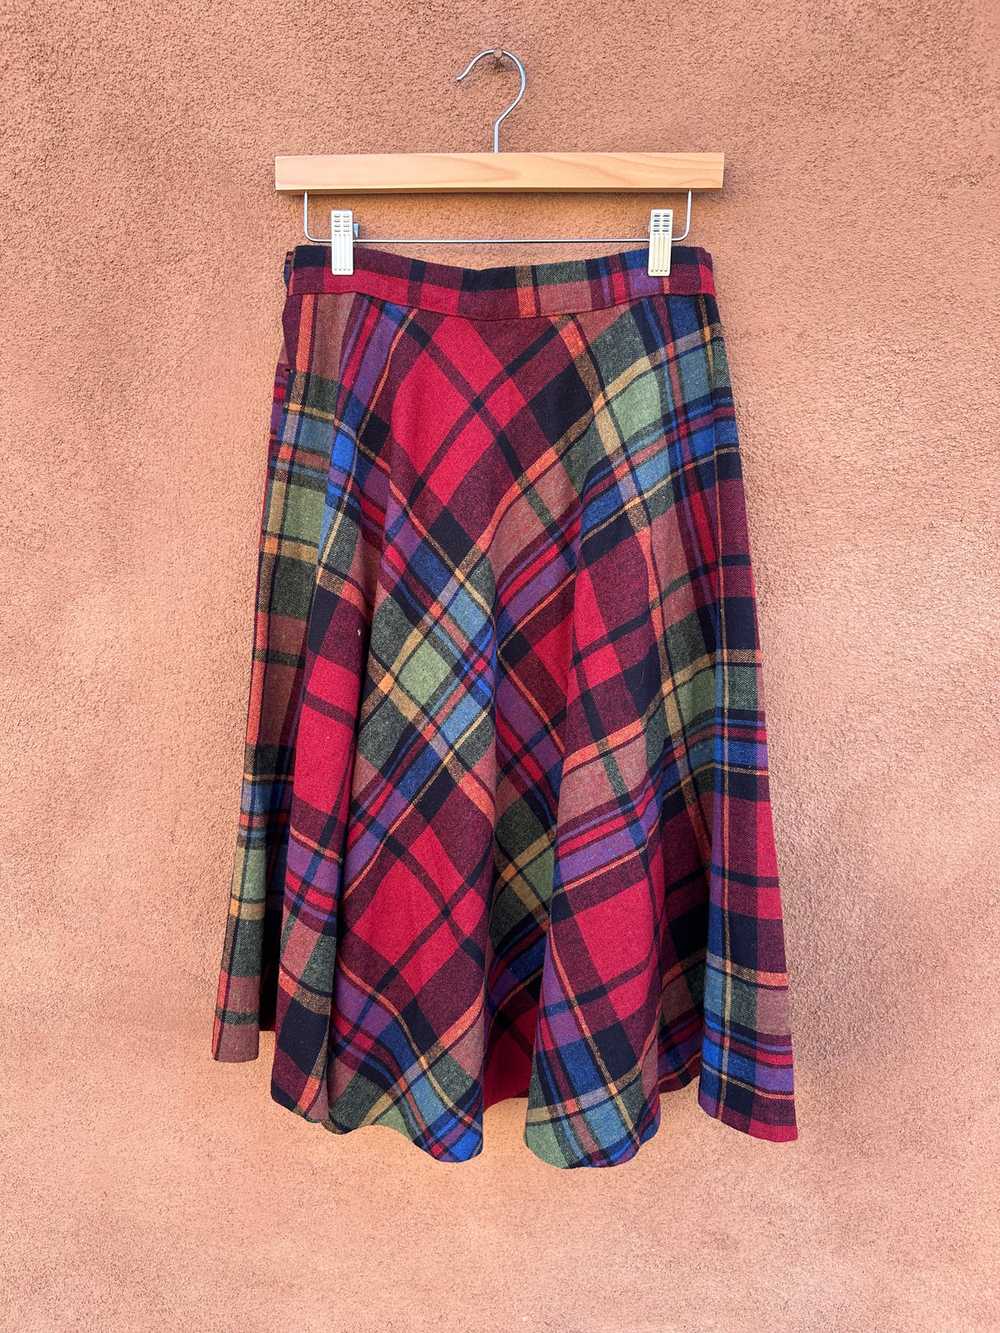 Stonybrook Wool Plaid Skirt - image 3